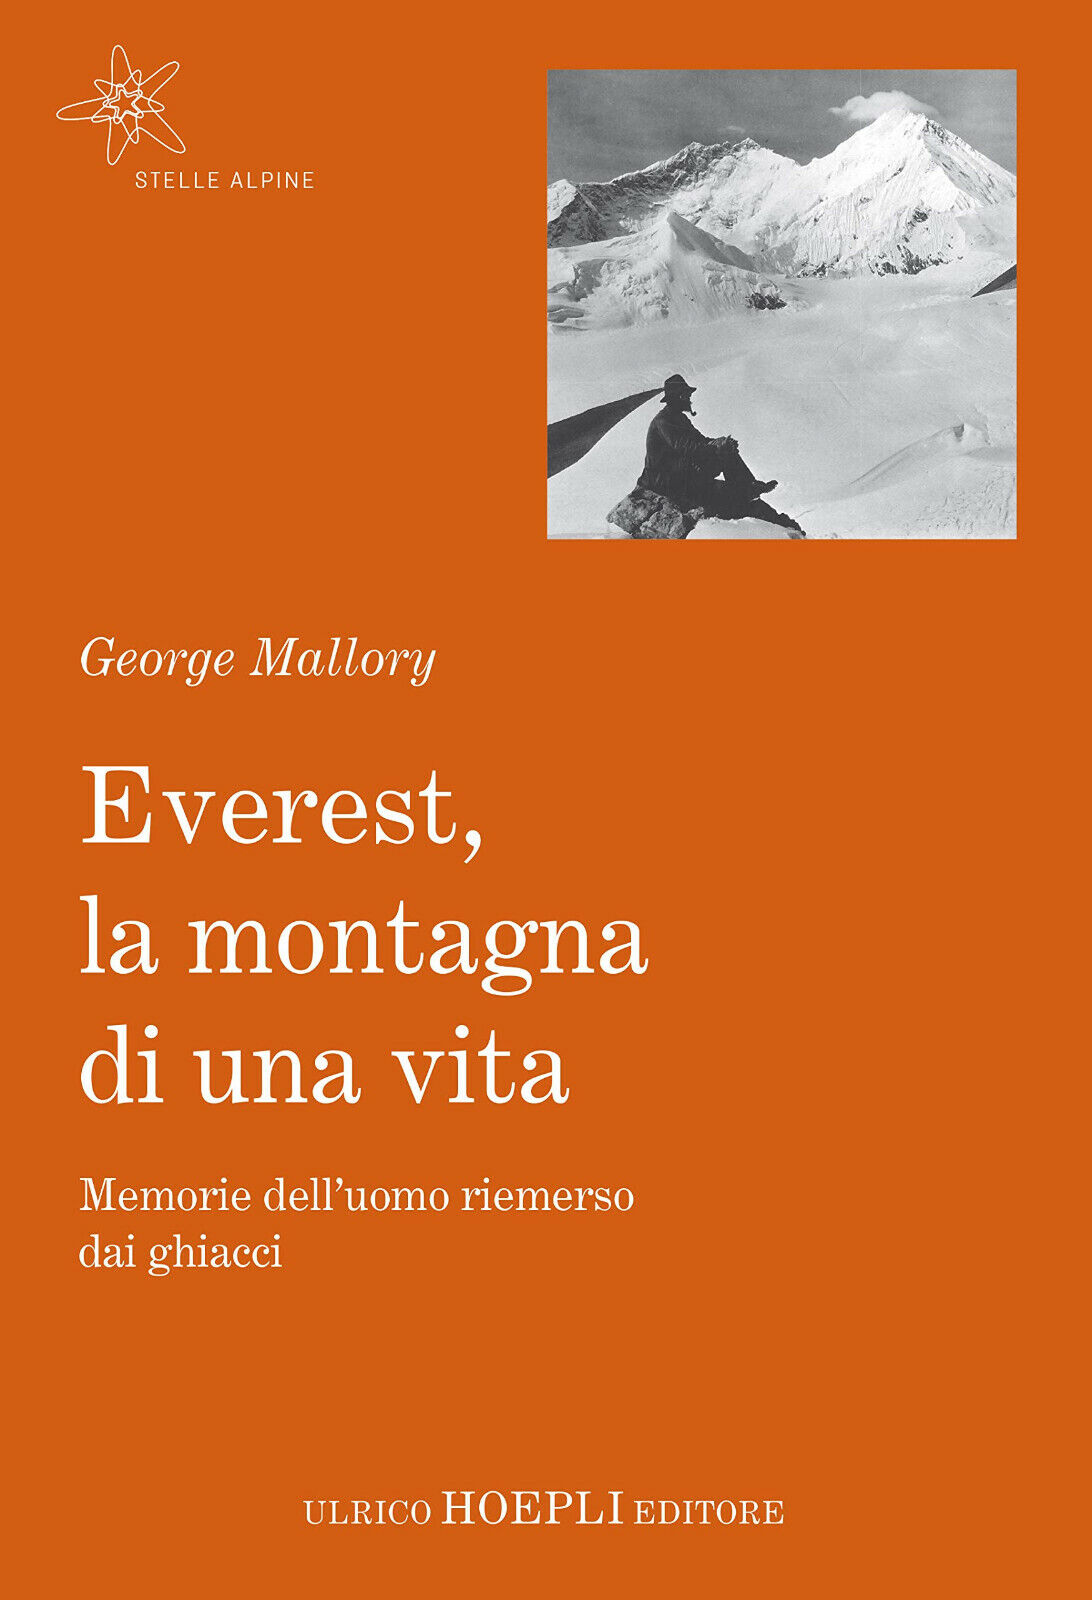 Everest, la montagna di una vita - George Mallory - Hoepli, 2018